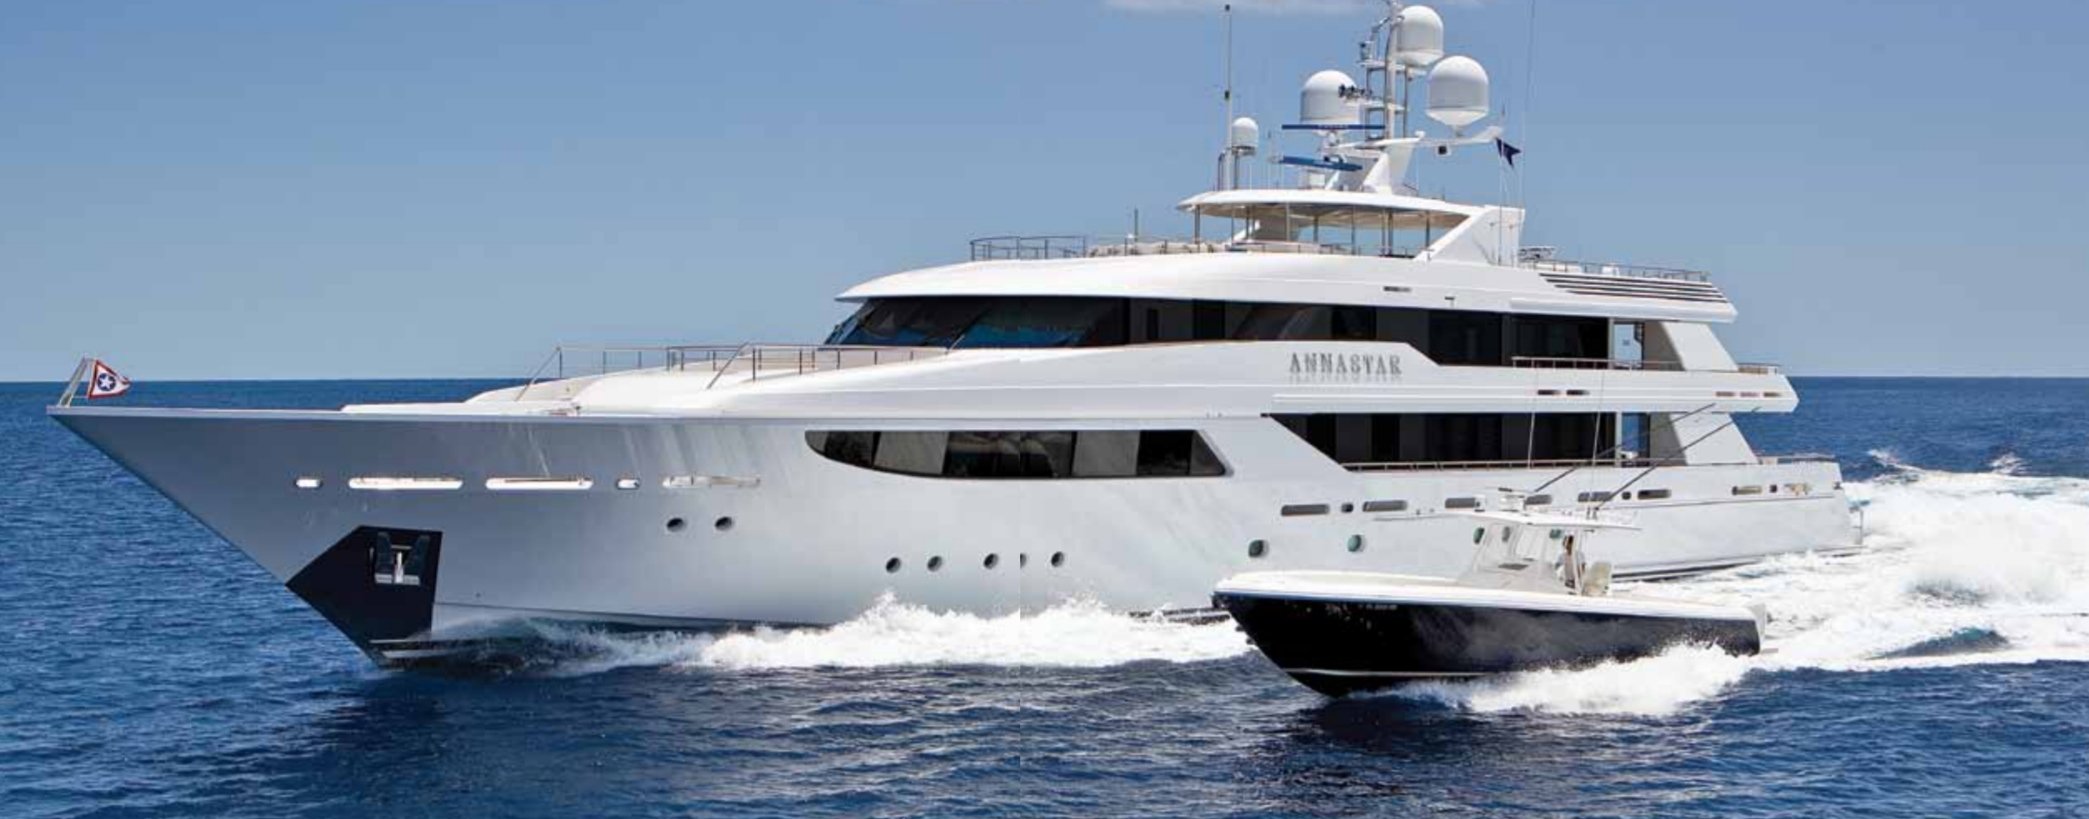 ANNASTAR Yacht - Westport - 2012 - Propriétaire Stanley Star